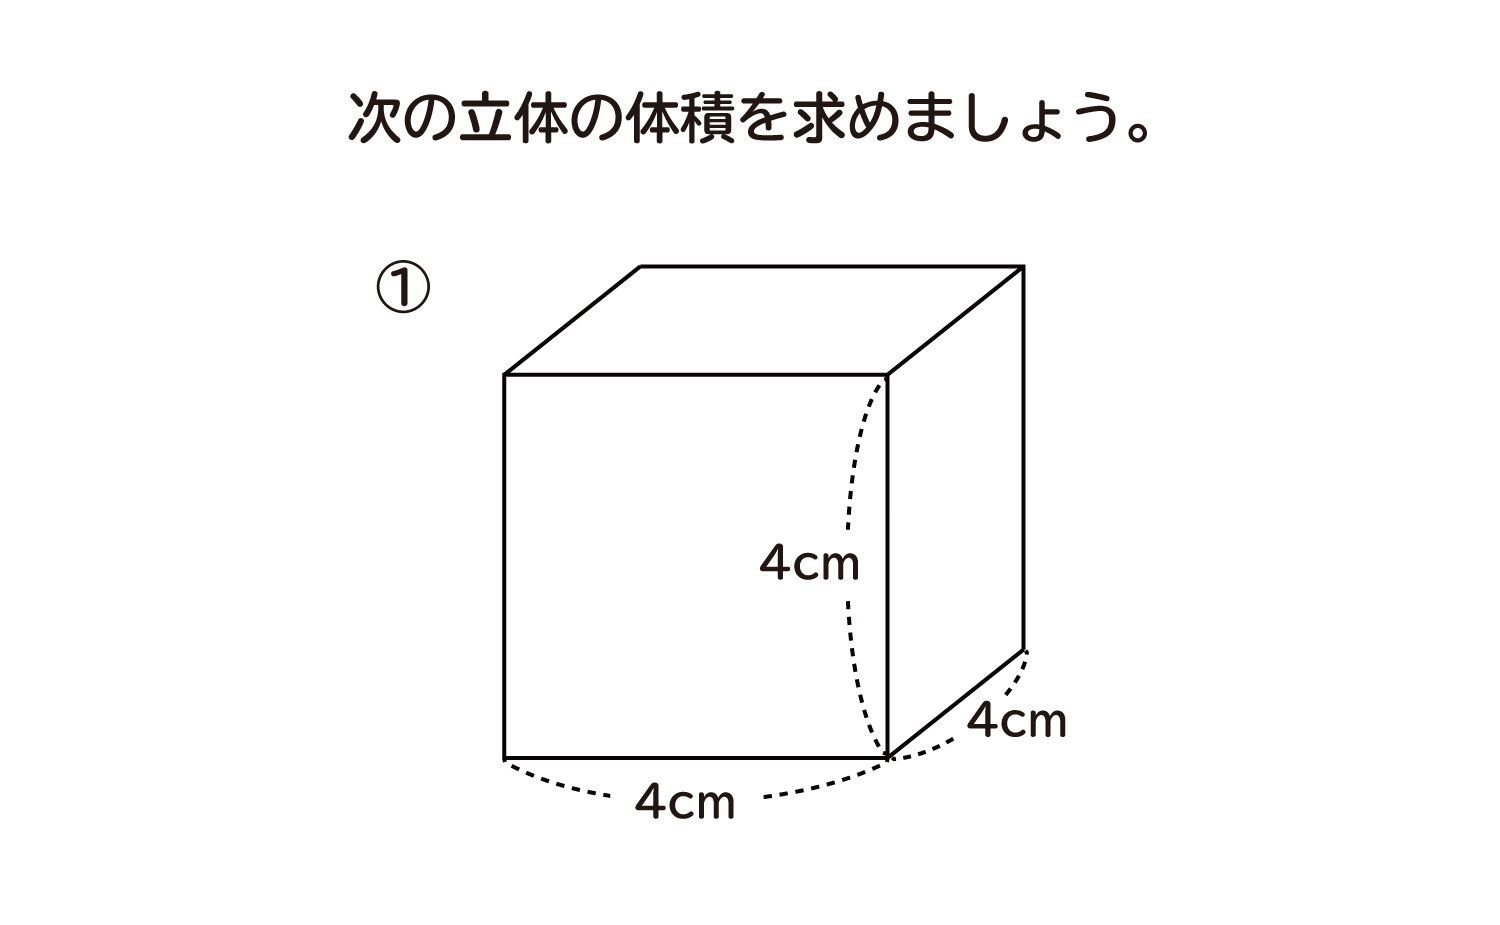 直方体や立方体の体積